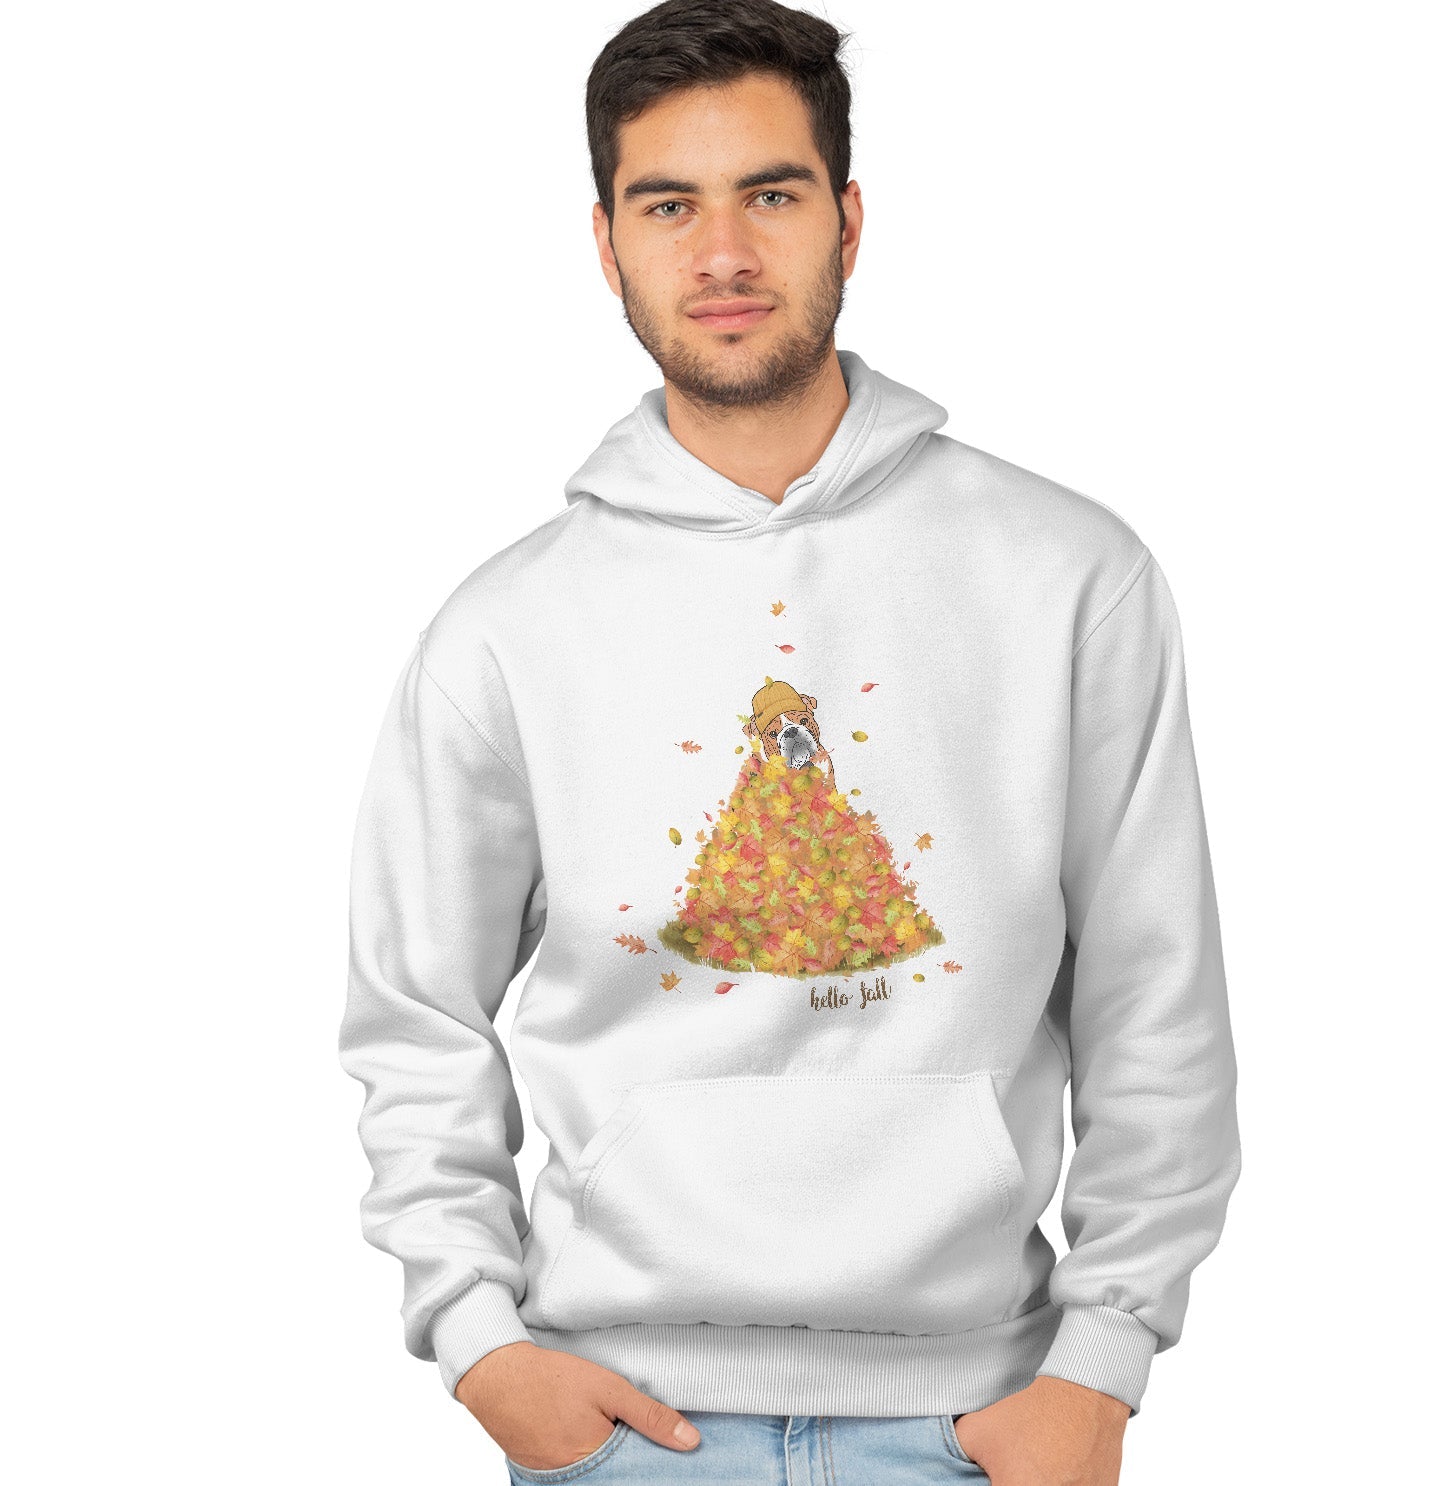 Leaf Pile and Bulldog - Adult Unisex Hoodie Sweatshirt